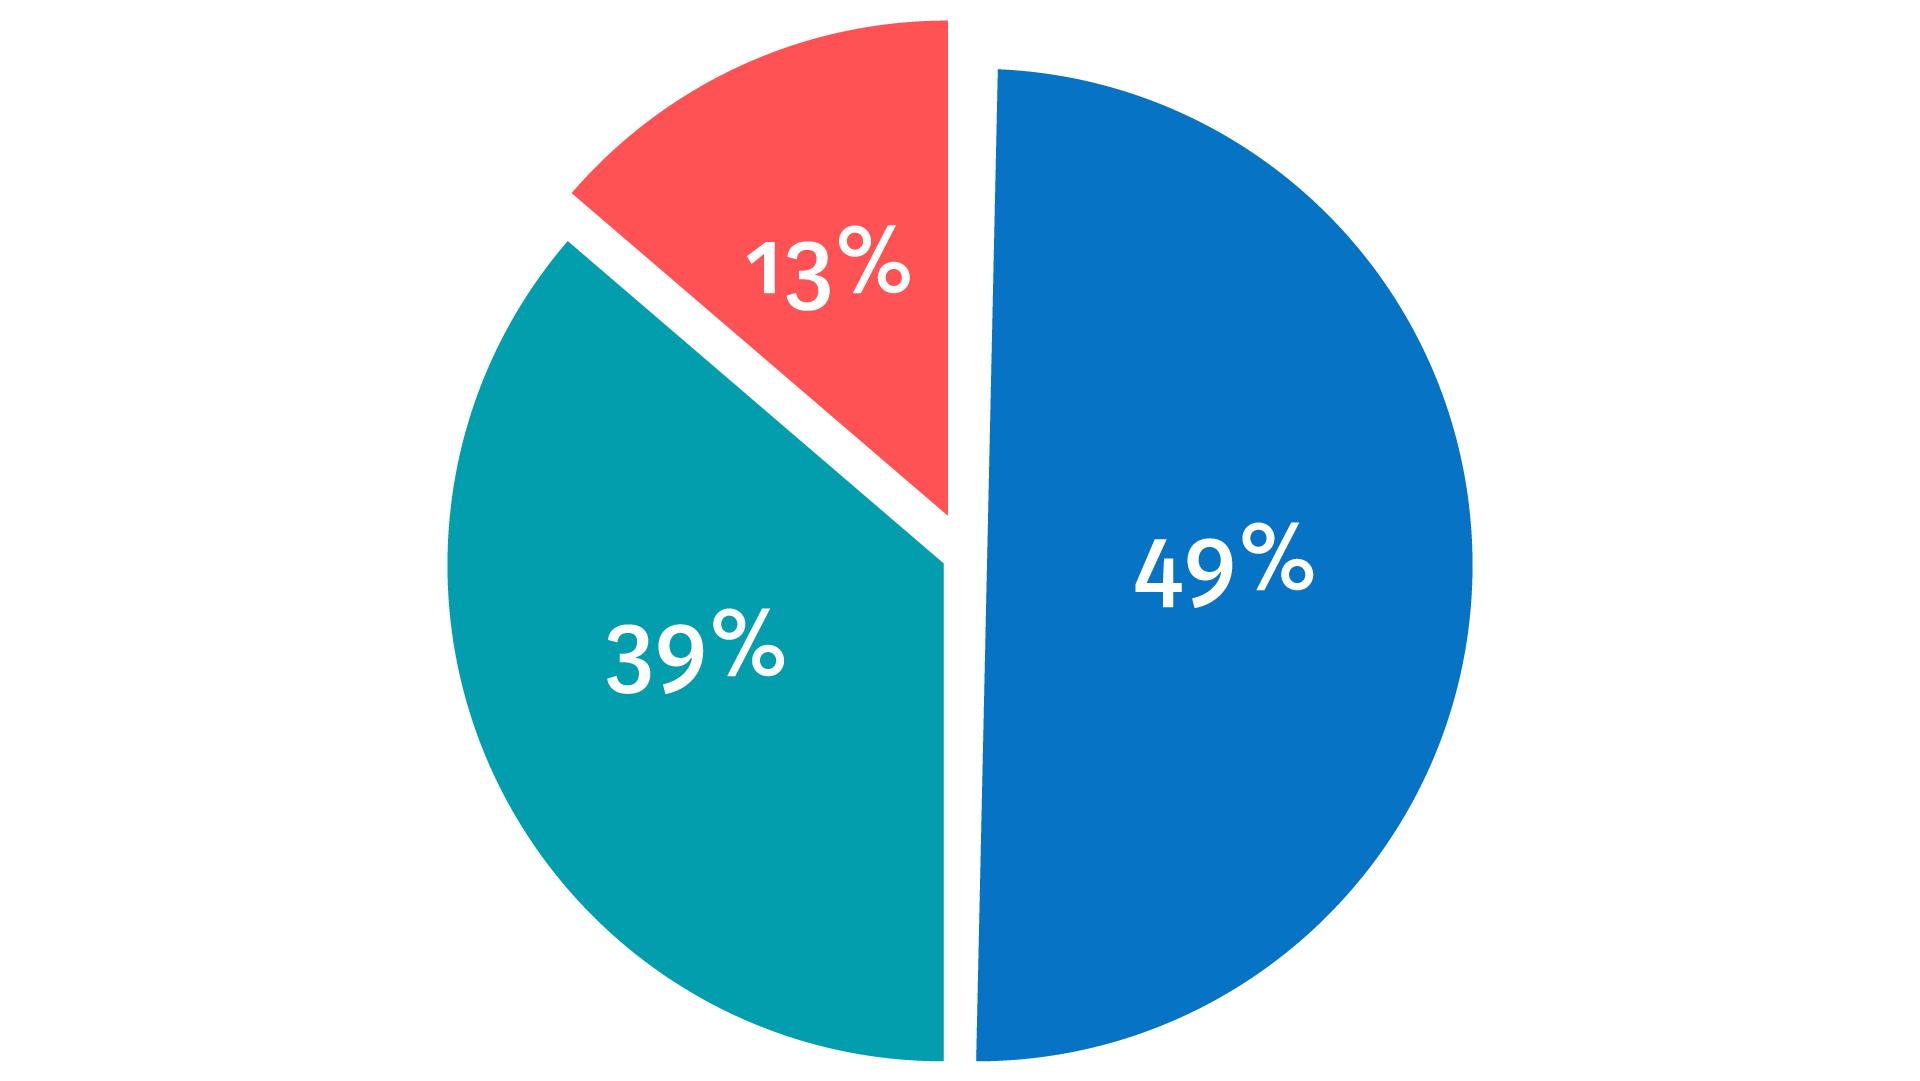 Ympyräkaavio jaettuna kolmeen osaan: 49 %, 39 % ja 13 %. 